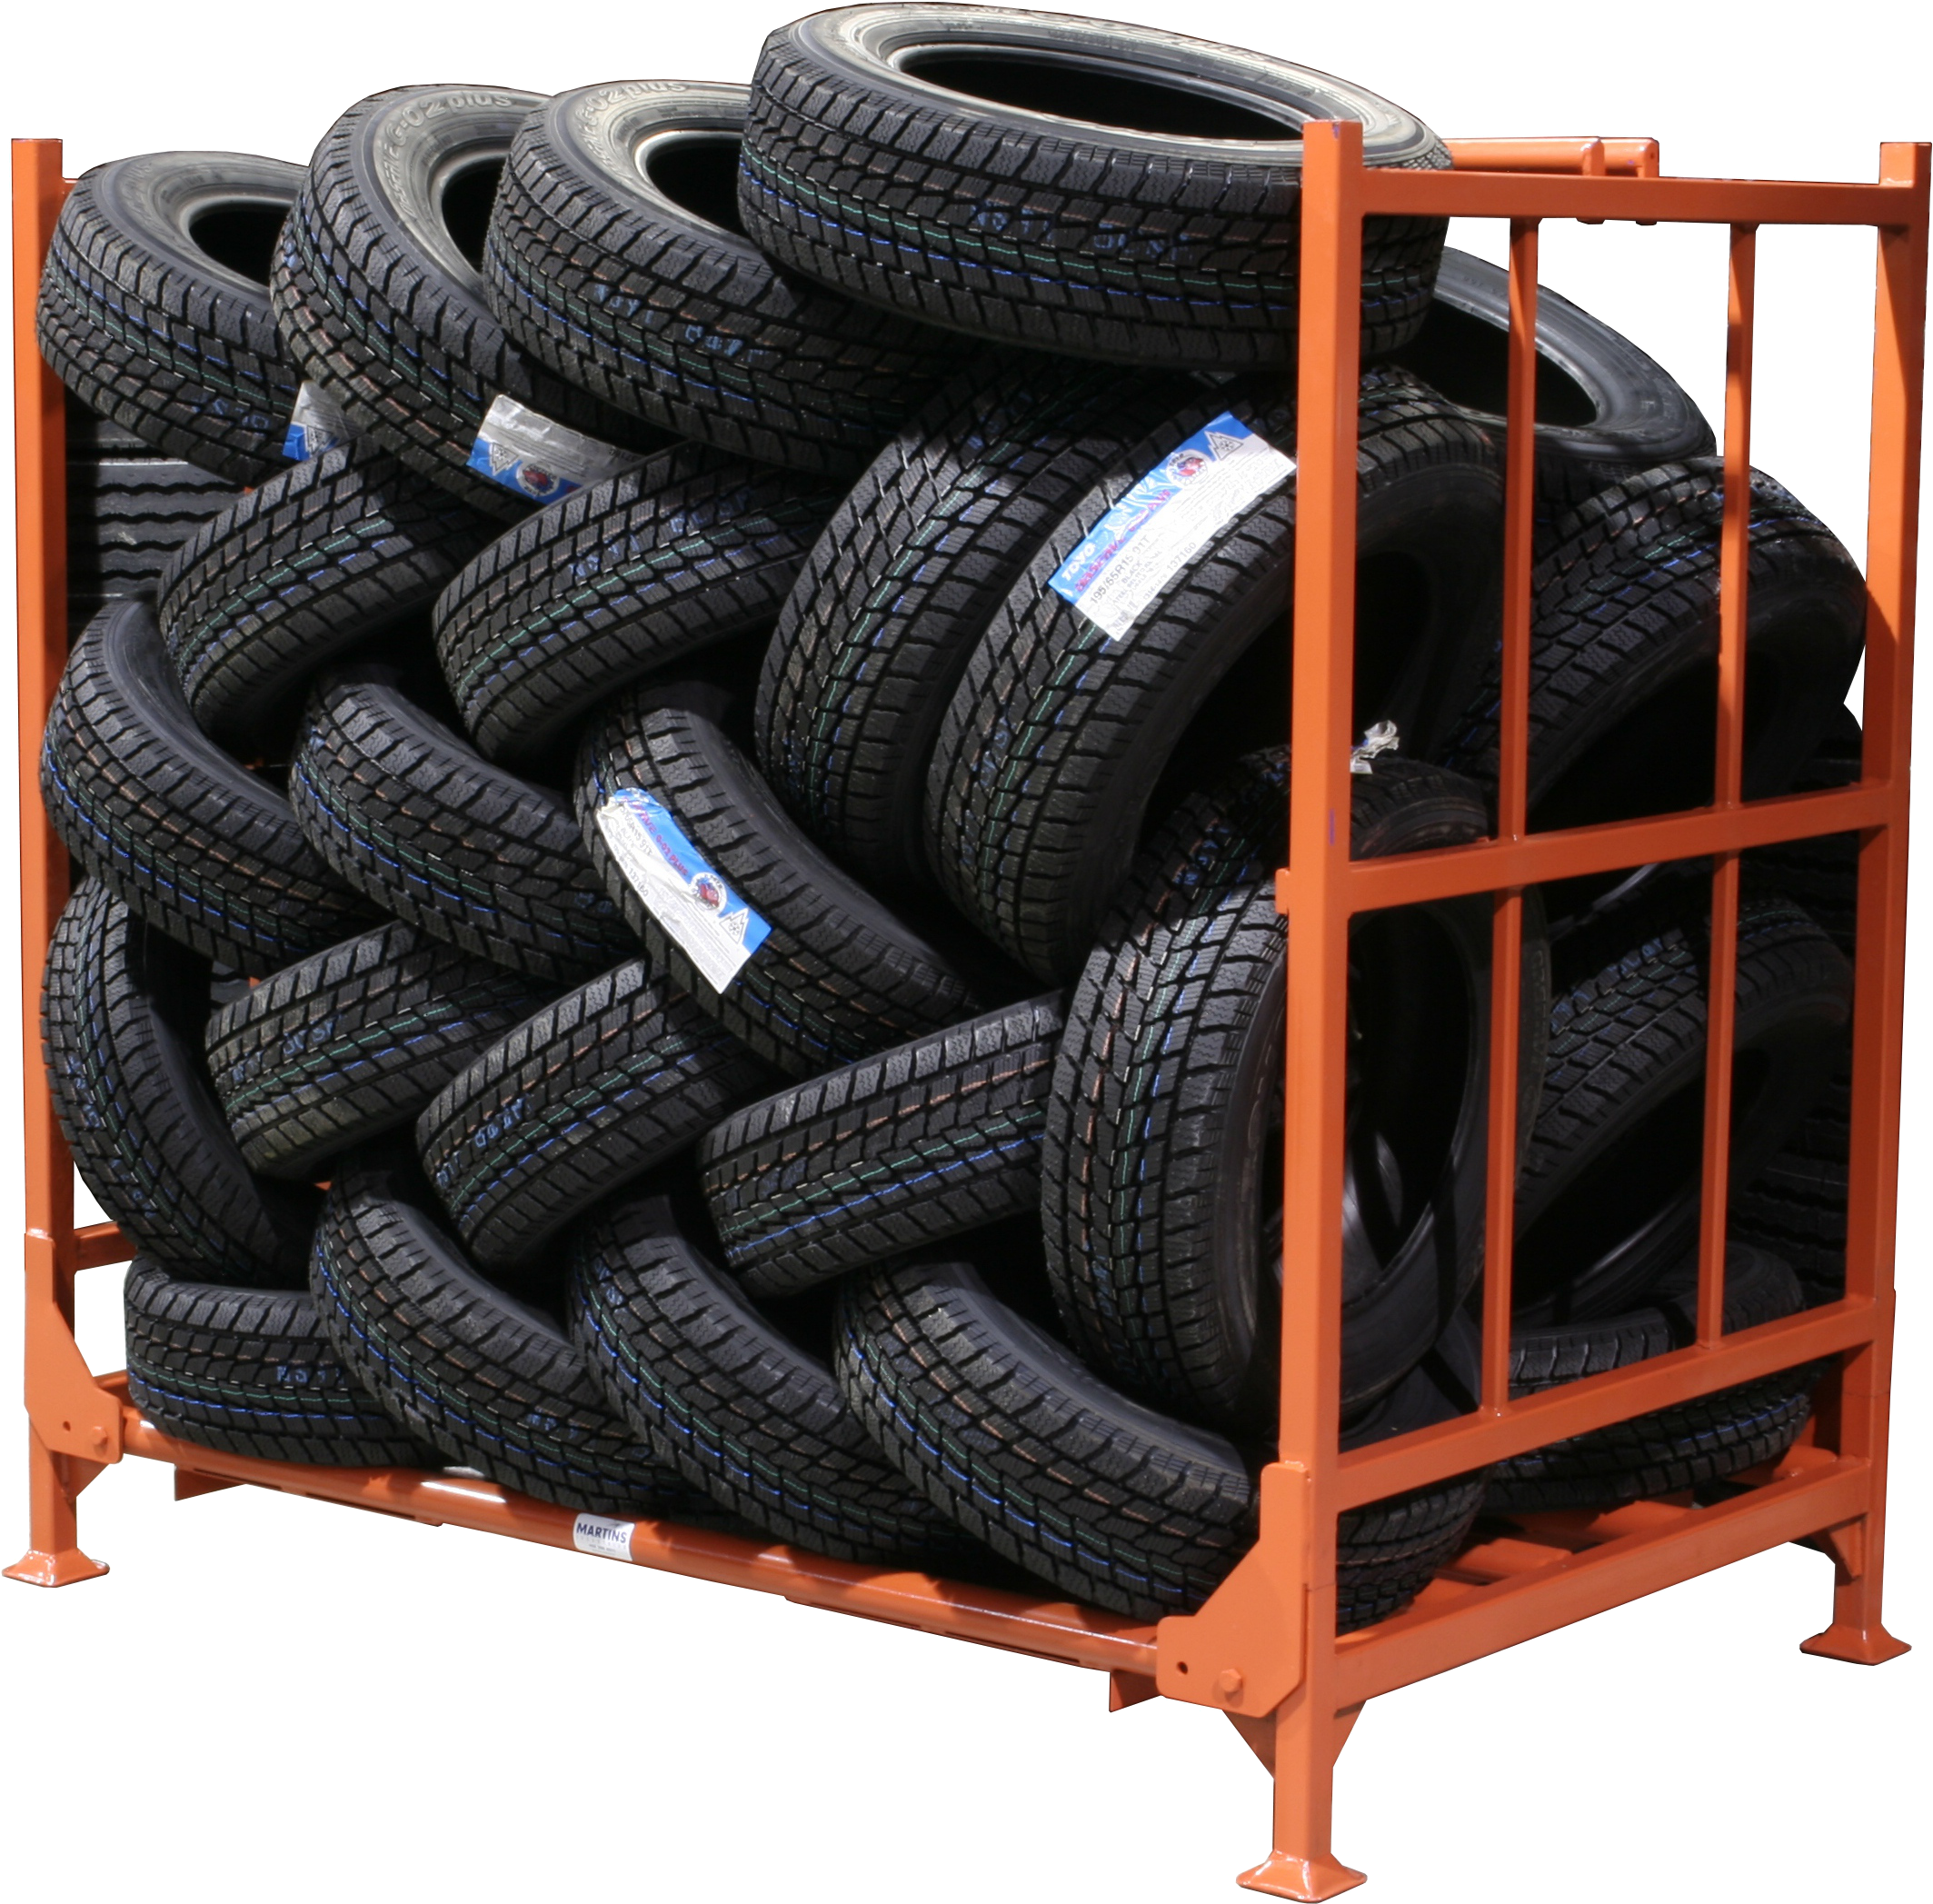 Storing Tires - Jaulas Para Almacenar Neumaticos Clipart (2904x2300), Png Download